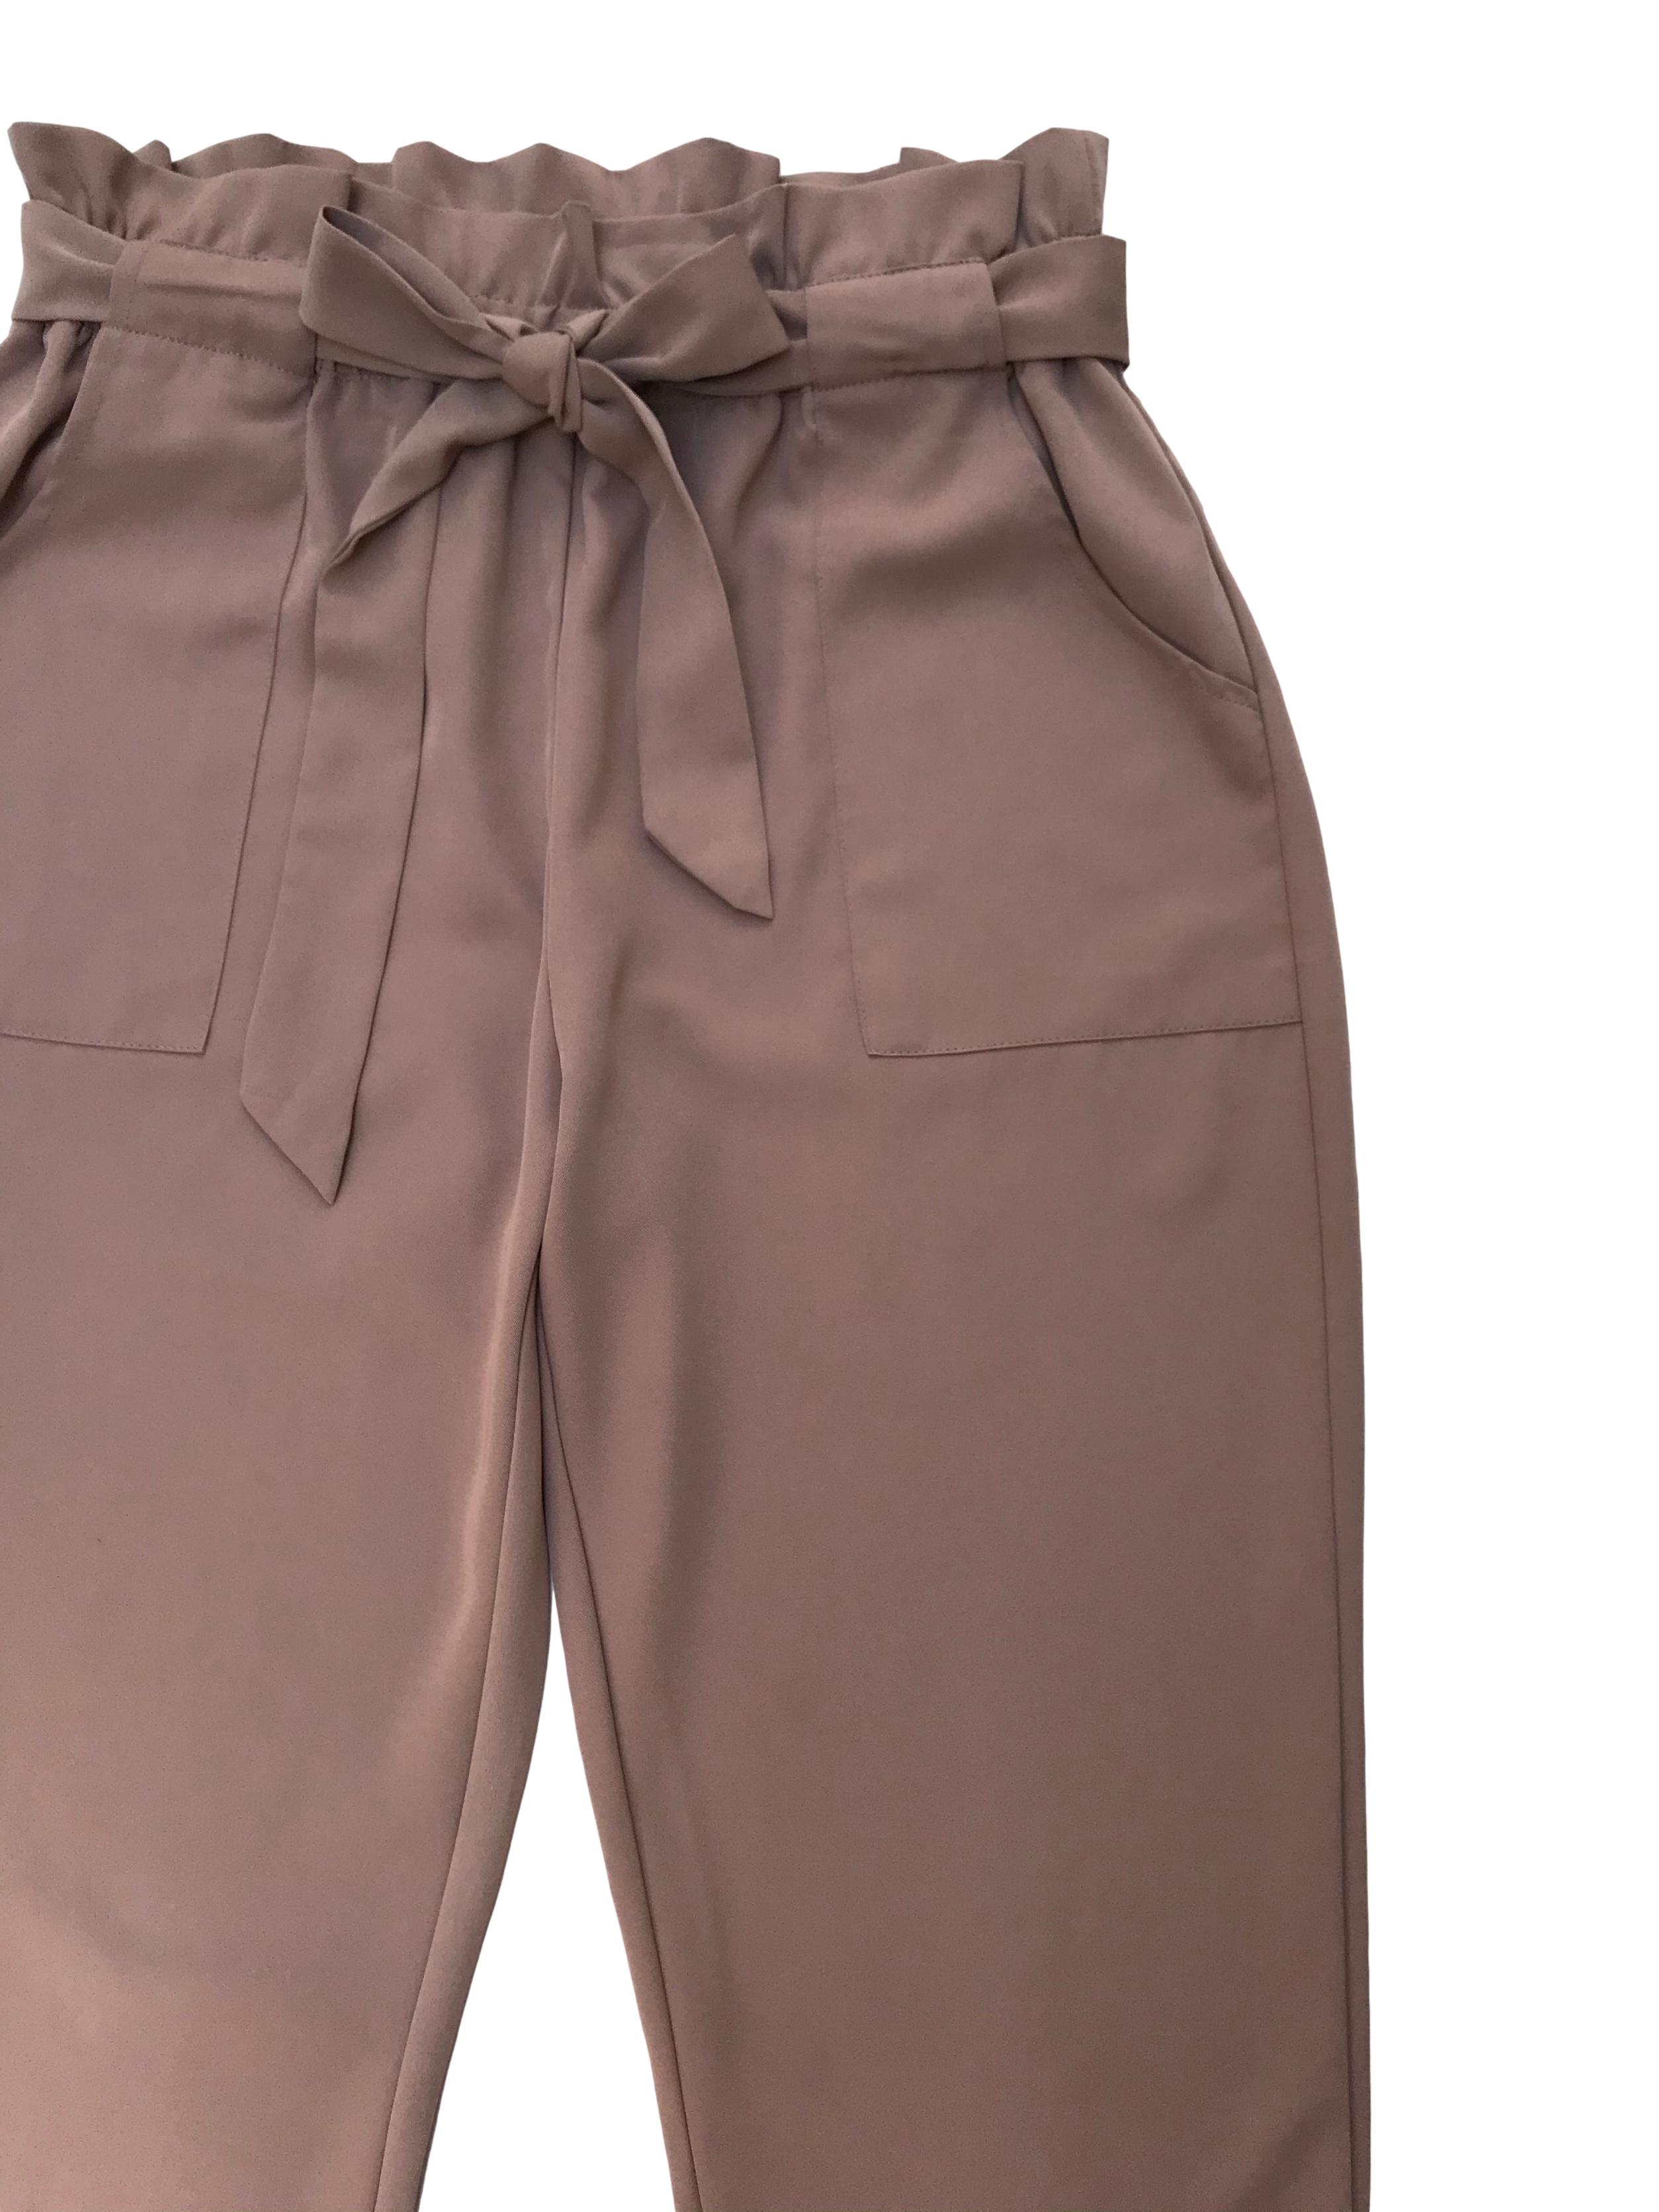 Pantalón paper bag beige de tela fluida, tiene bolsillos laterales y corte slim. Cintura 76cm sin estirar Cadera 110cm